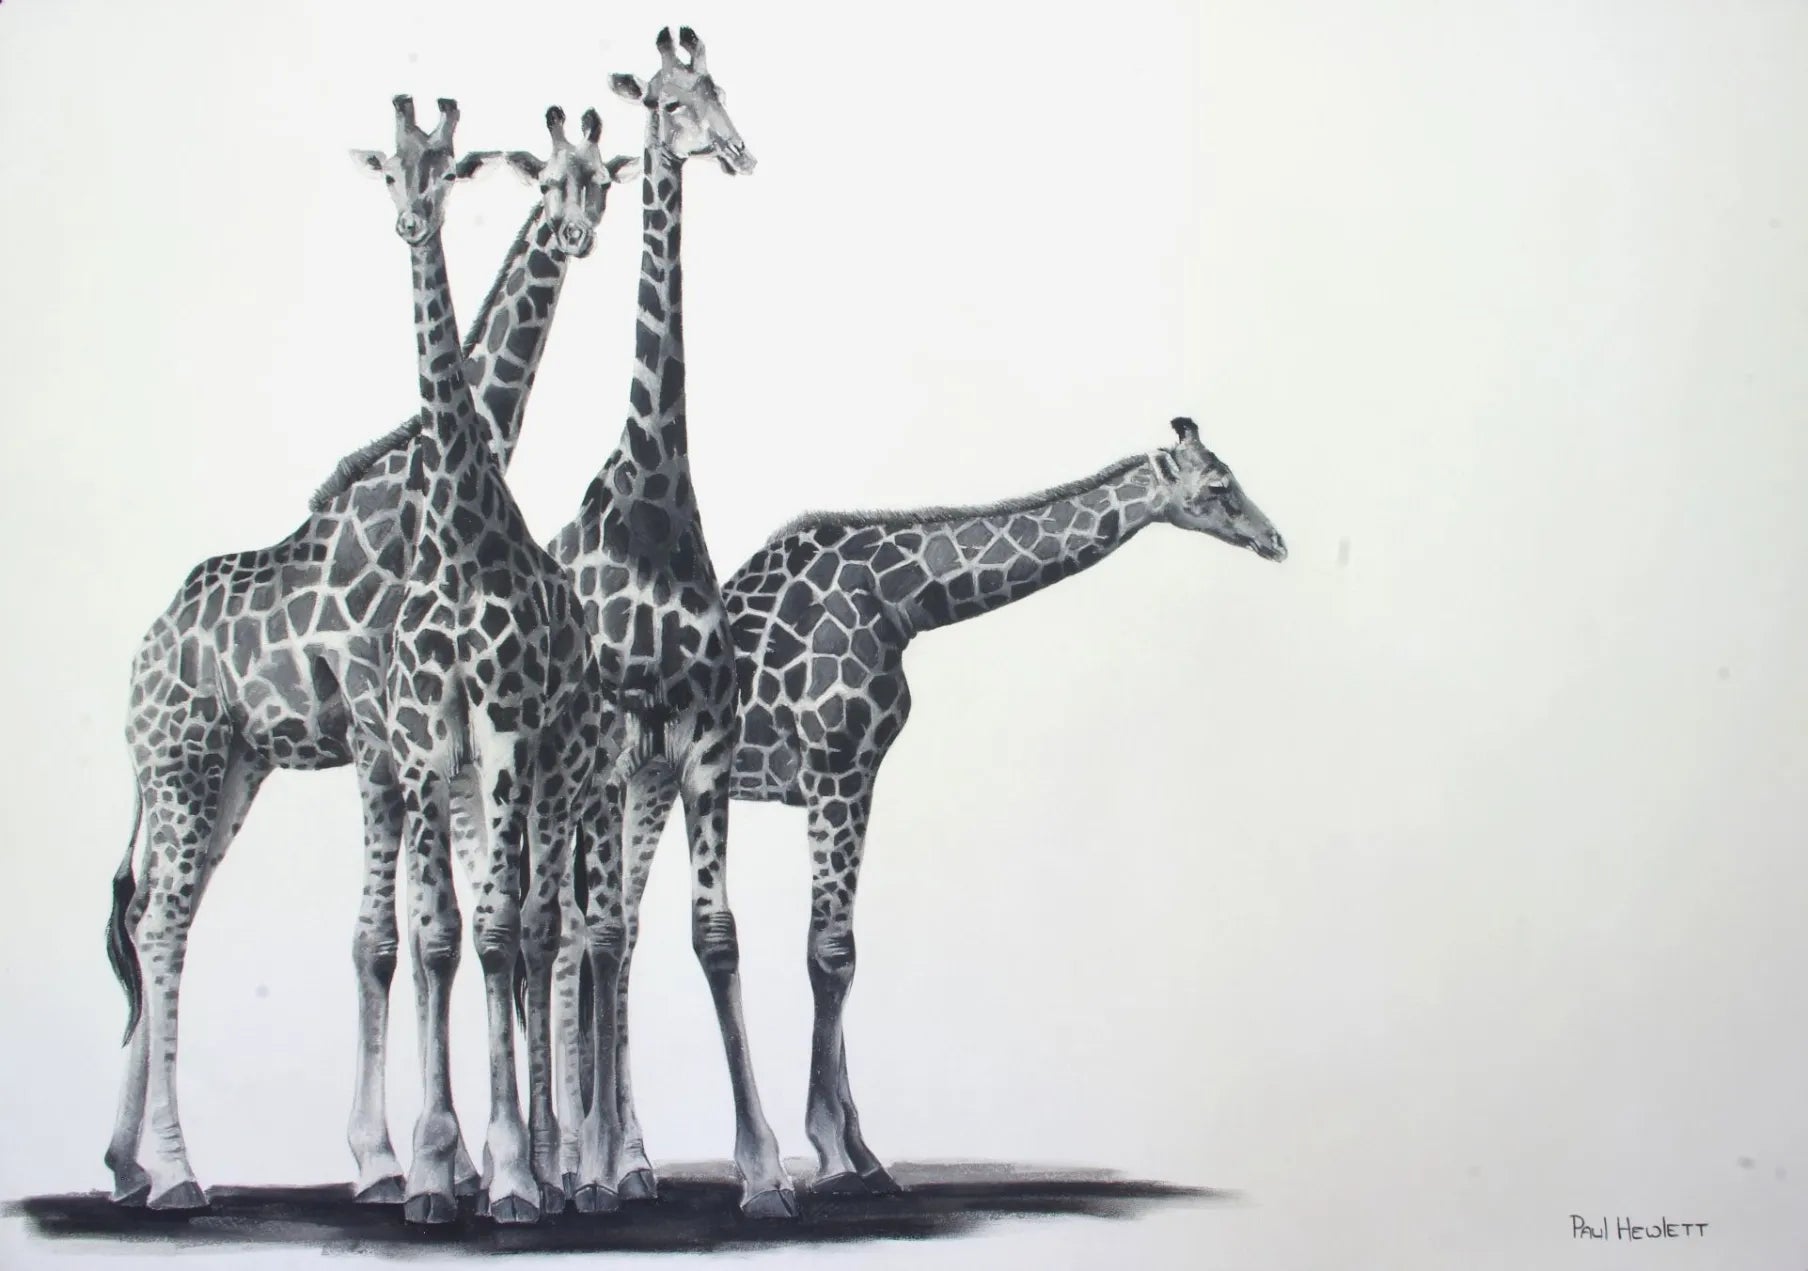 A Tower Of Giraffes Paul Hewlett Drawings JULIE MILLER AFRICAN CONTEMPORARY